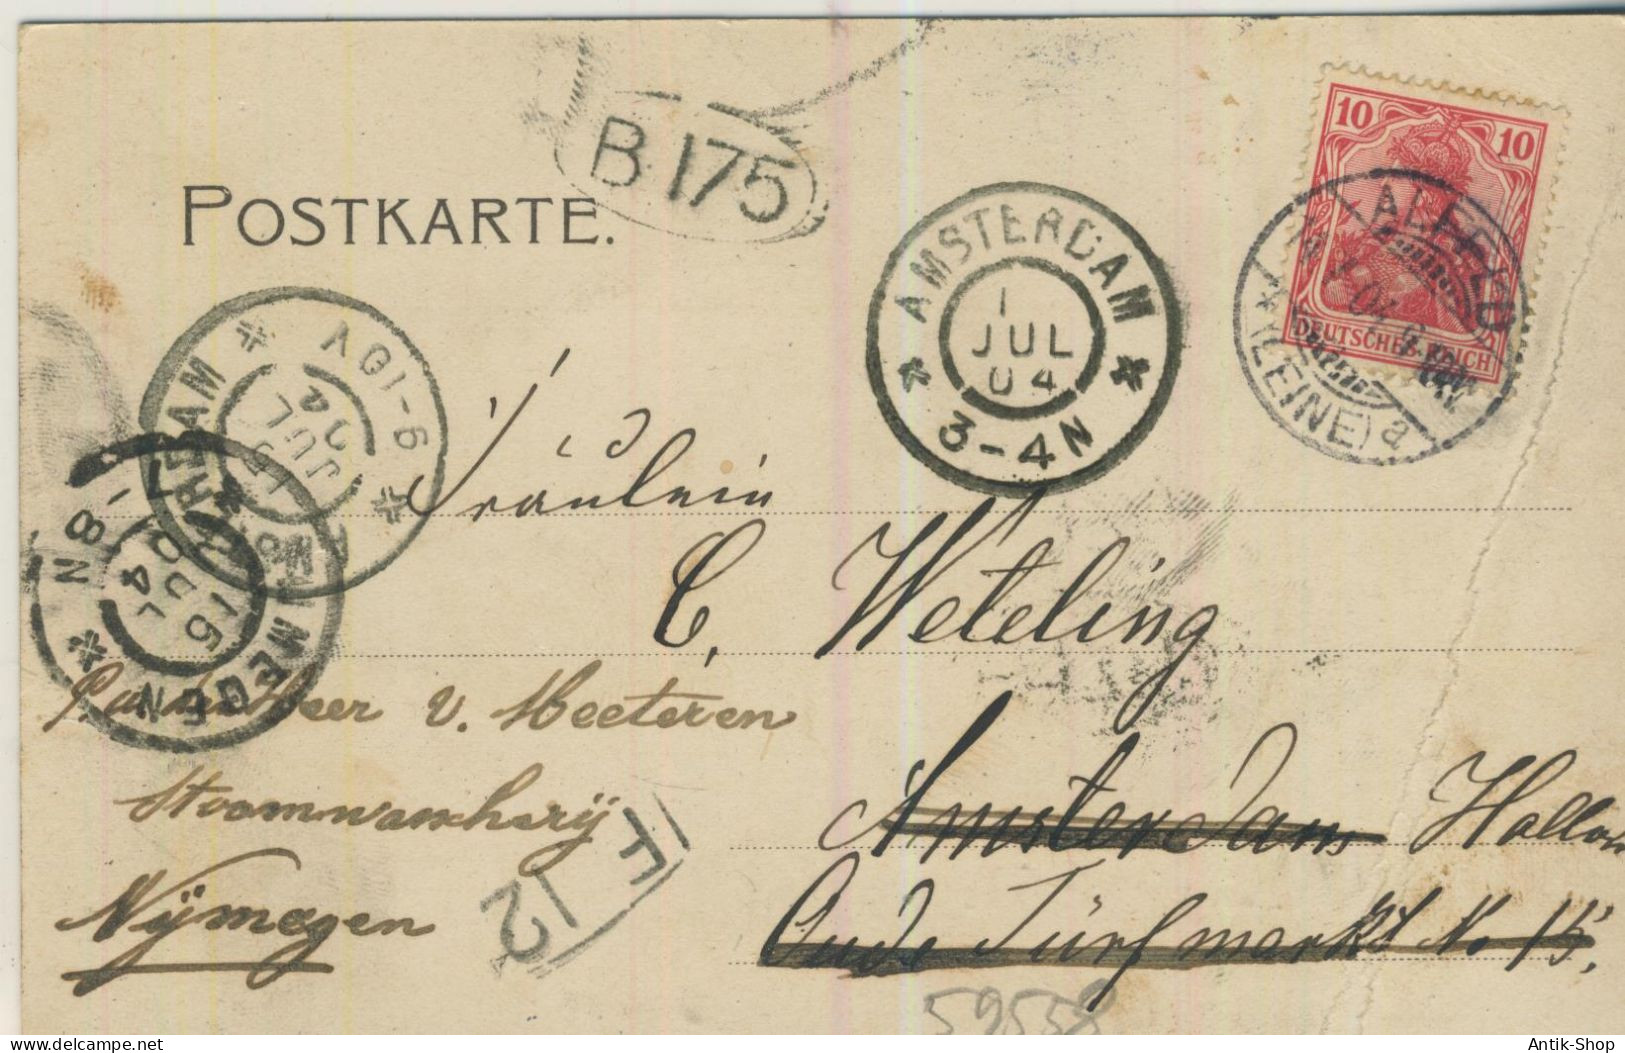 Blick Auf Ahlfeld A. L. Vom Schlehberge Gesehen - Von 1904 (59558) - Alfeld